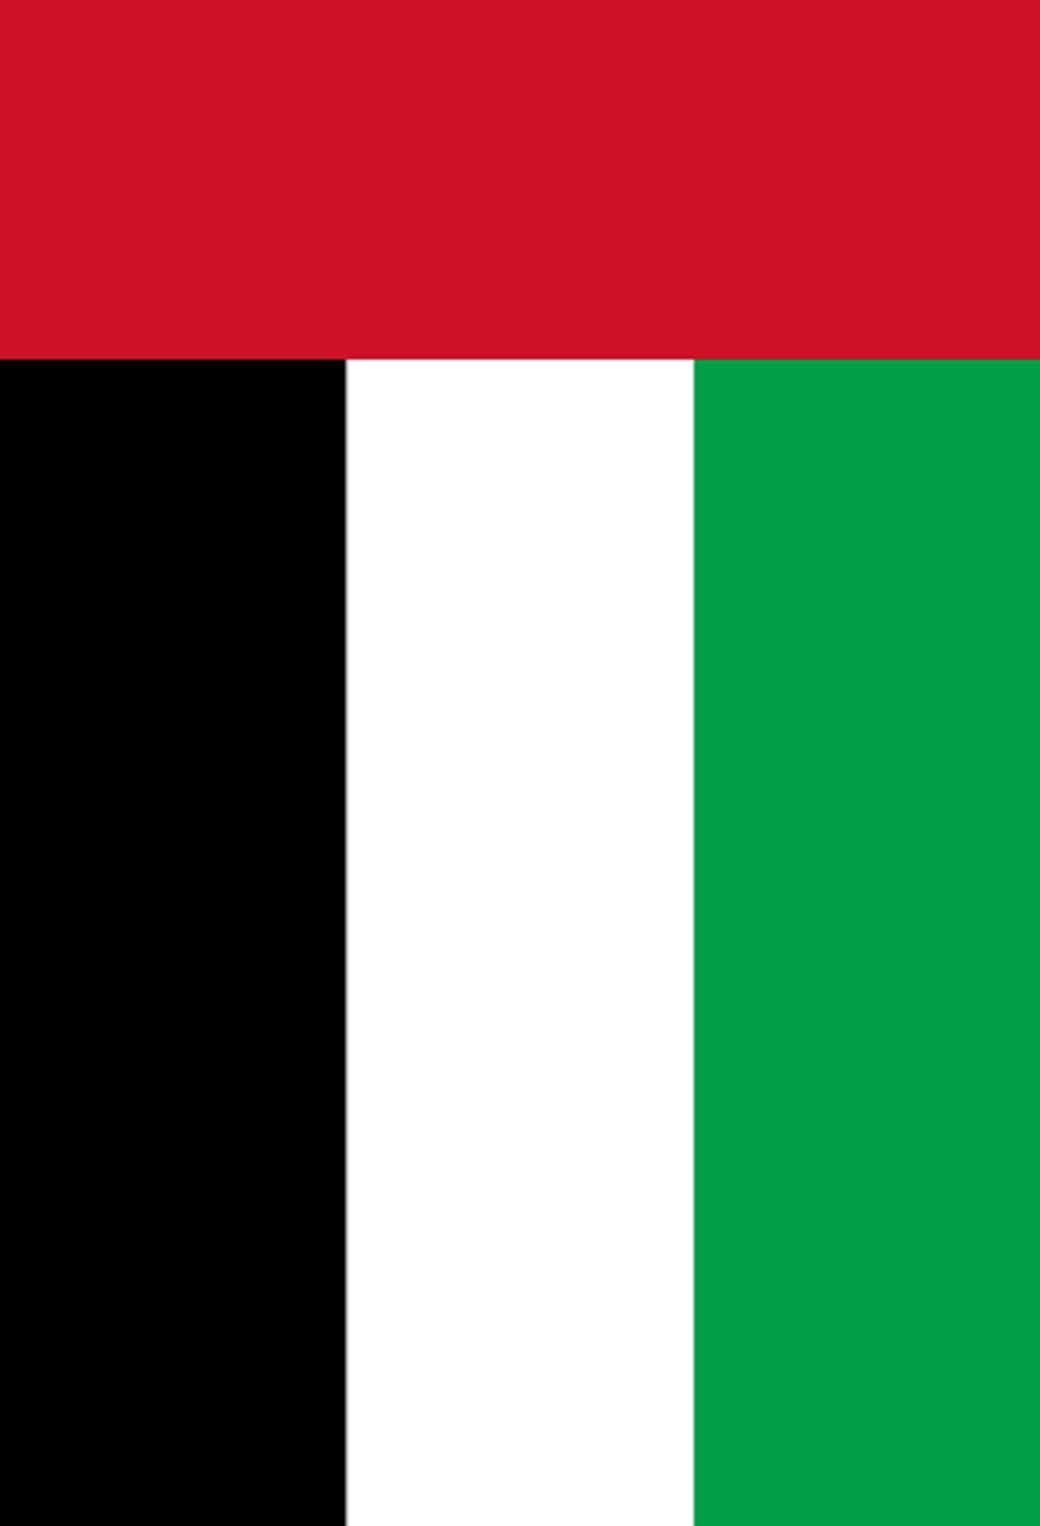 アラブ首長国連邦国旗 58 Iphone壁紙 すべて1136 X 640pxサイズ